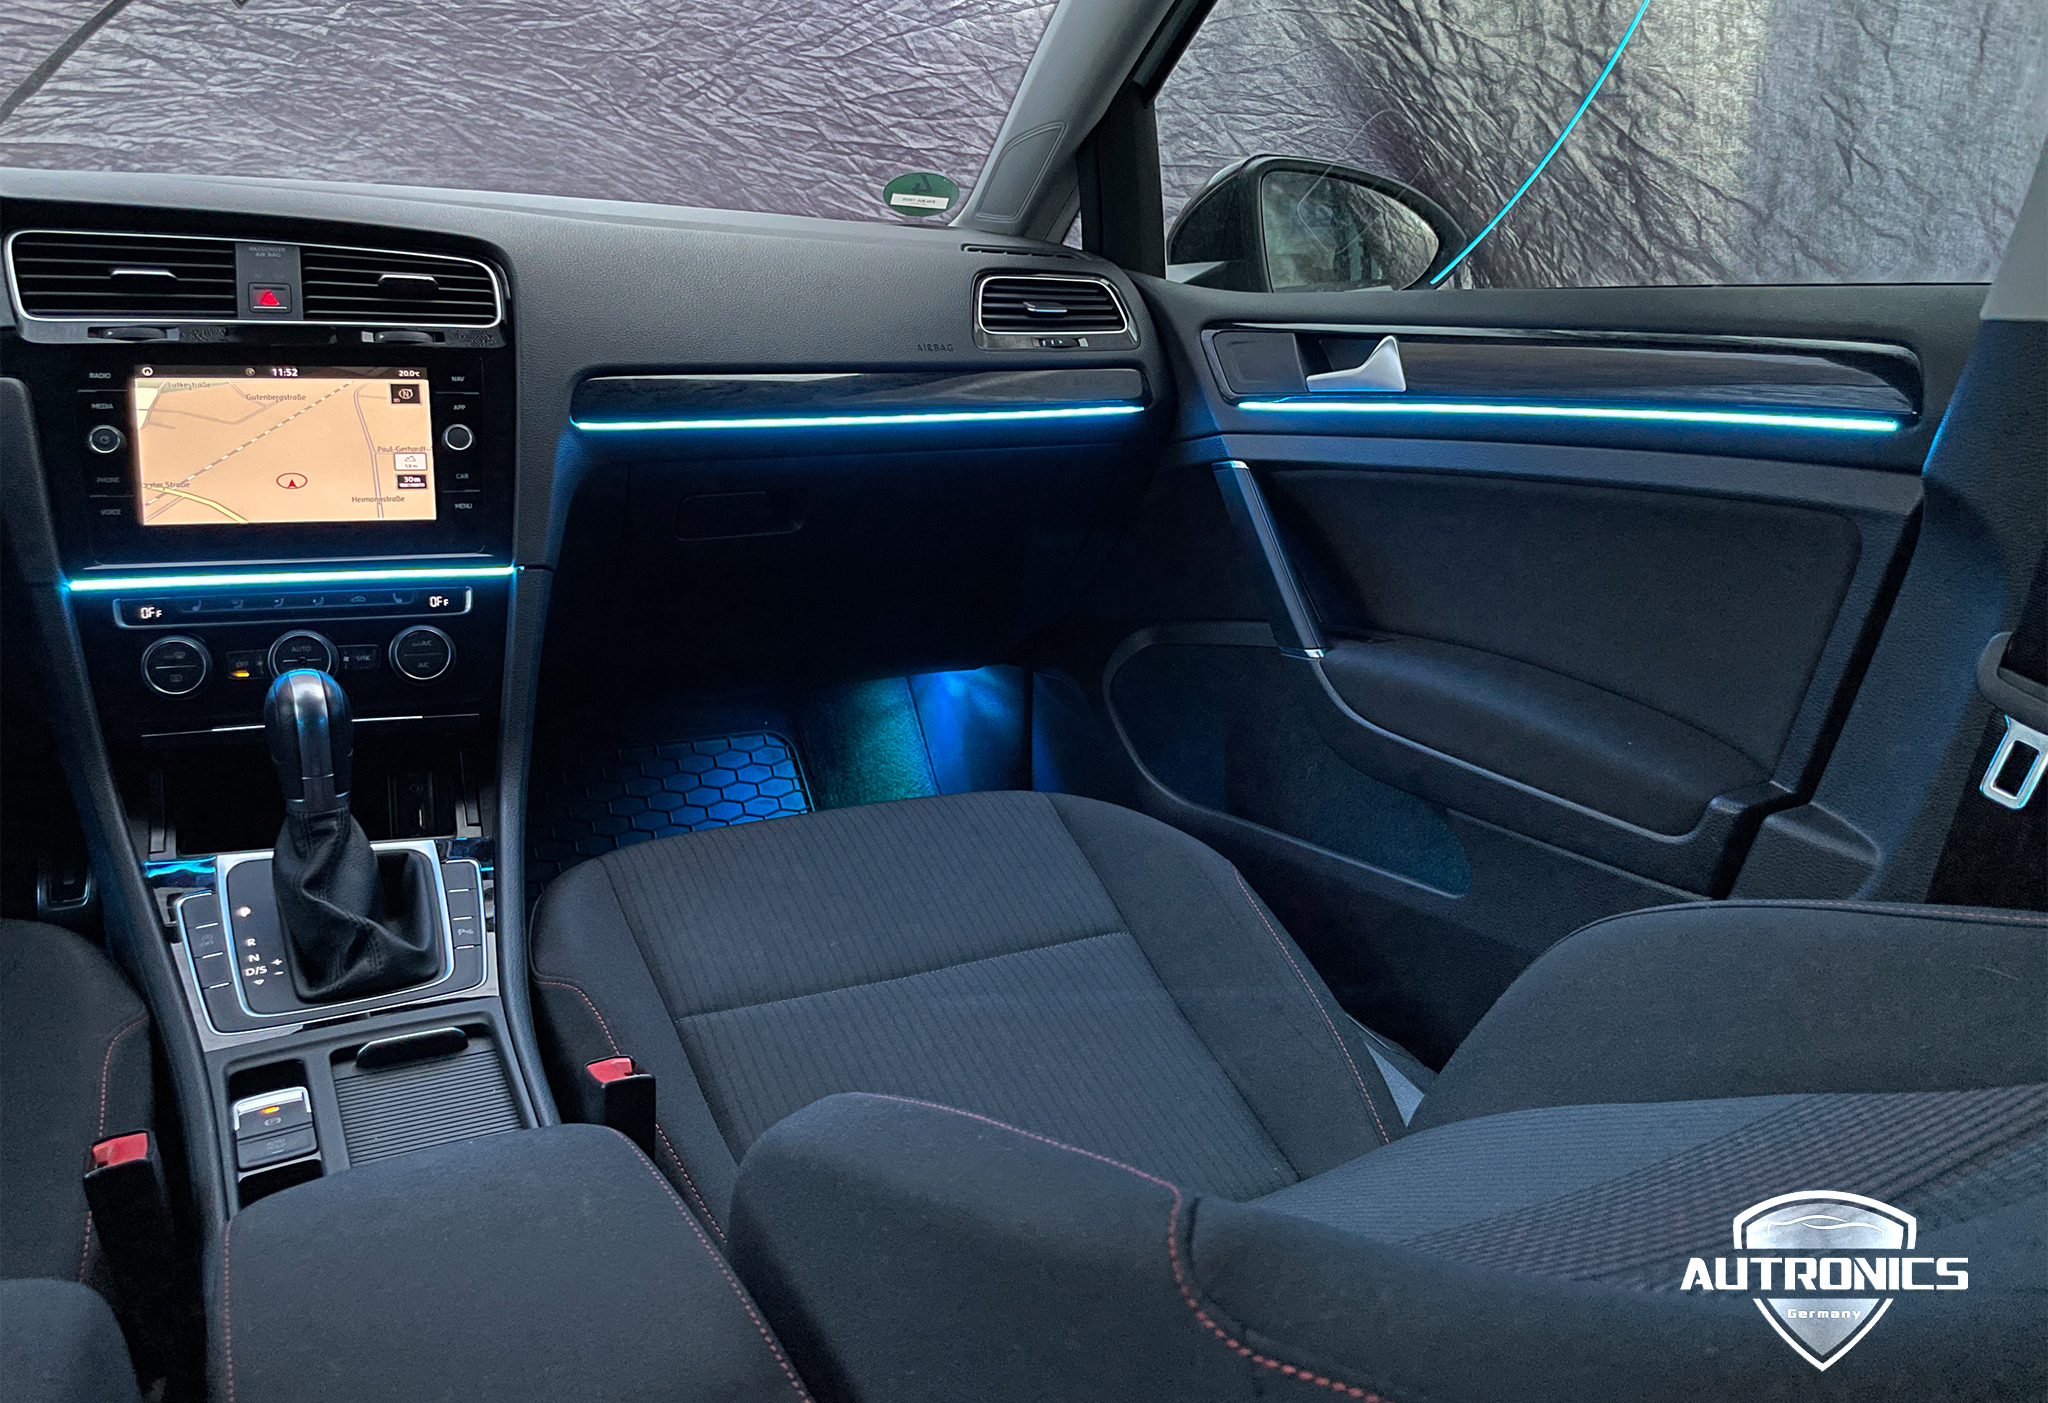 Ambientebeleuchtung Nachrüsten im Auto Innenraumbeleuchtung Beleuchtung geeignet für VW Golf 7 02